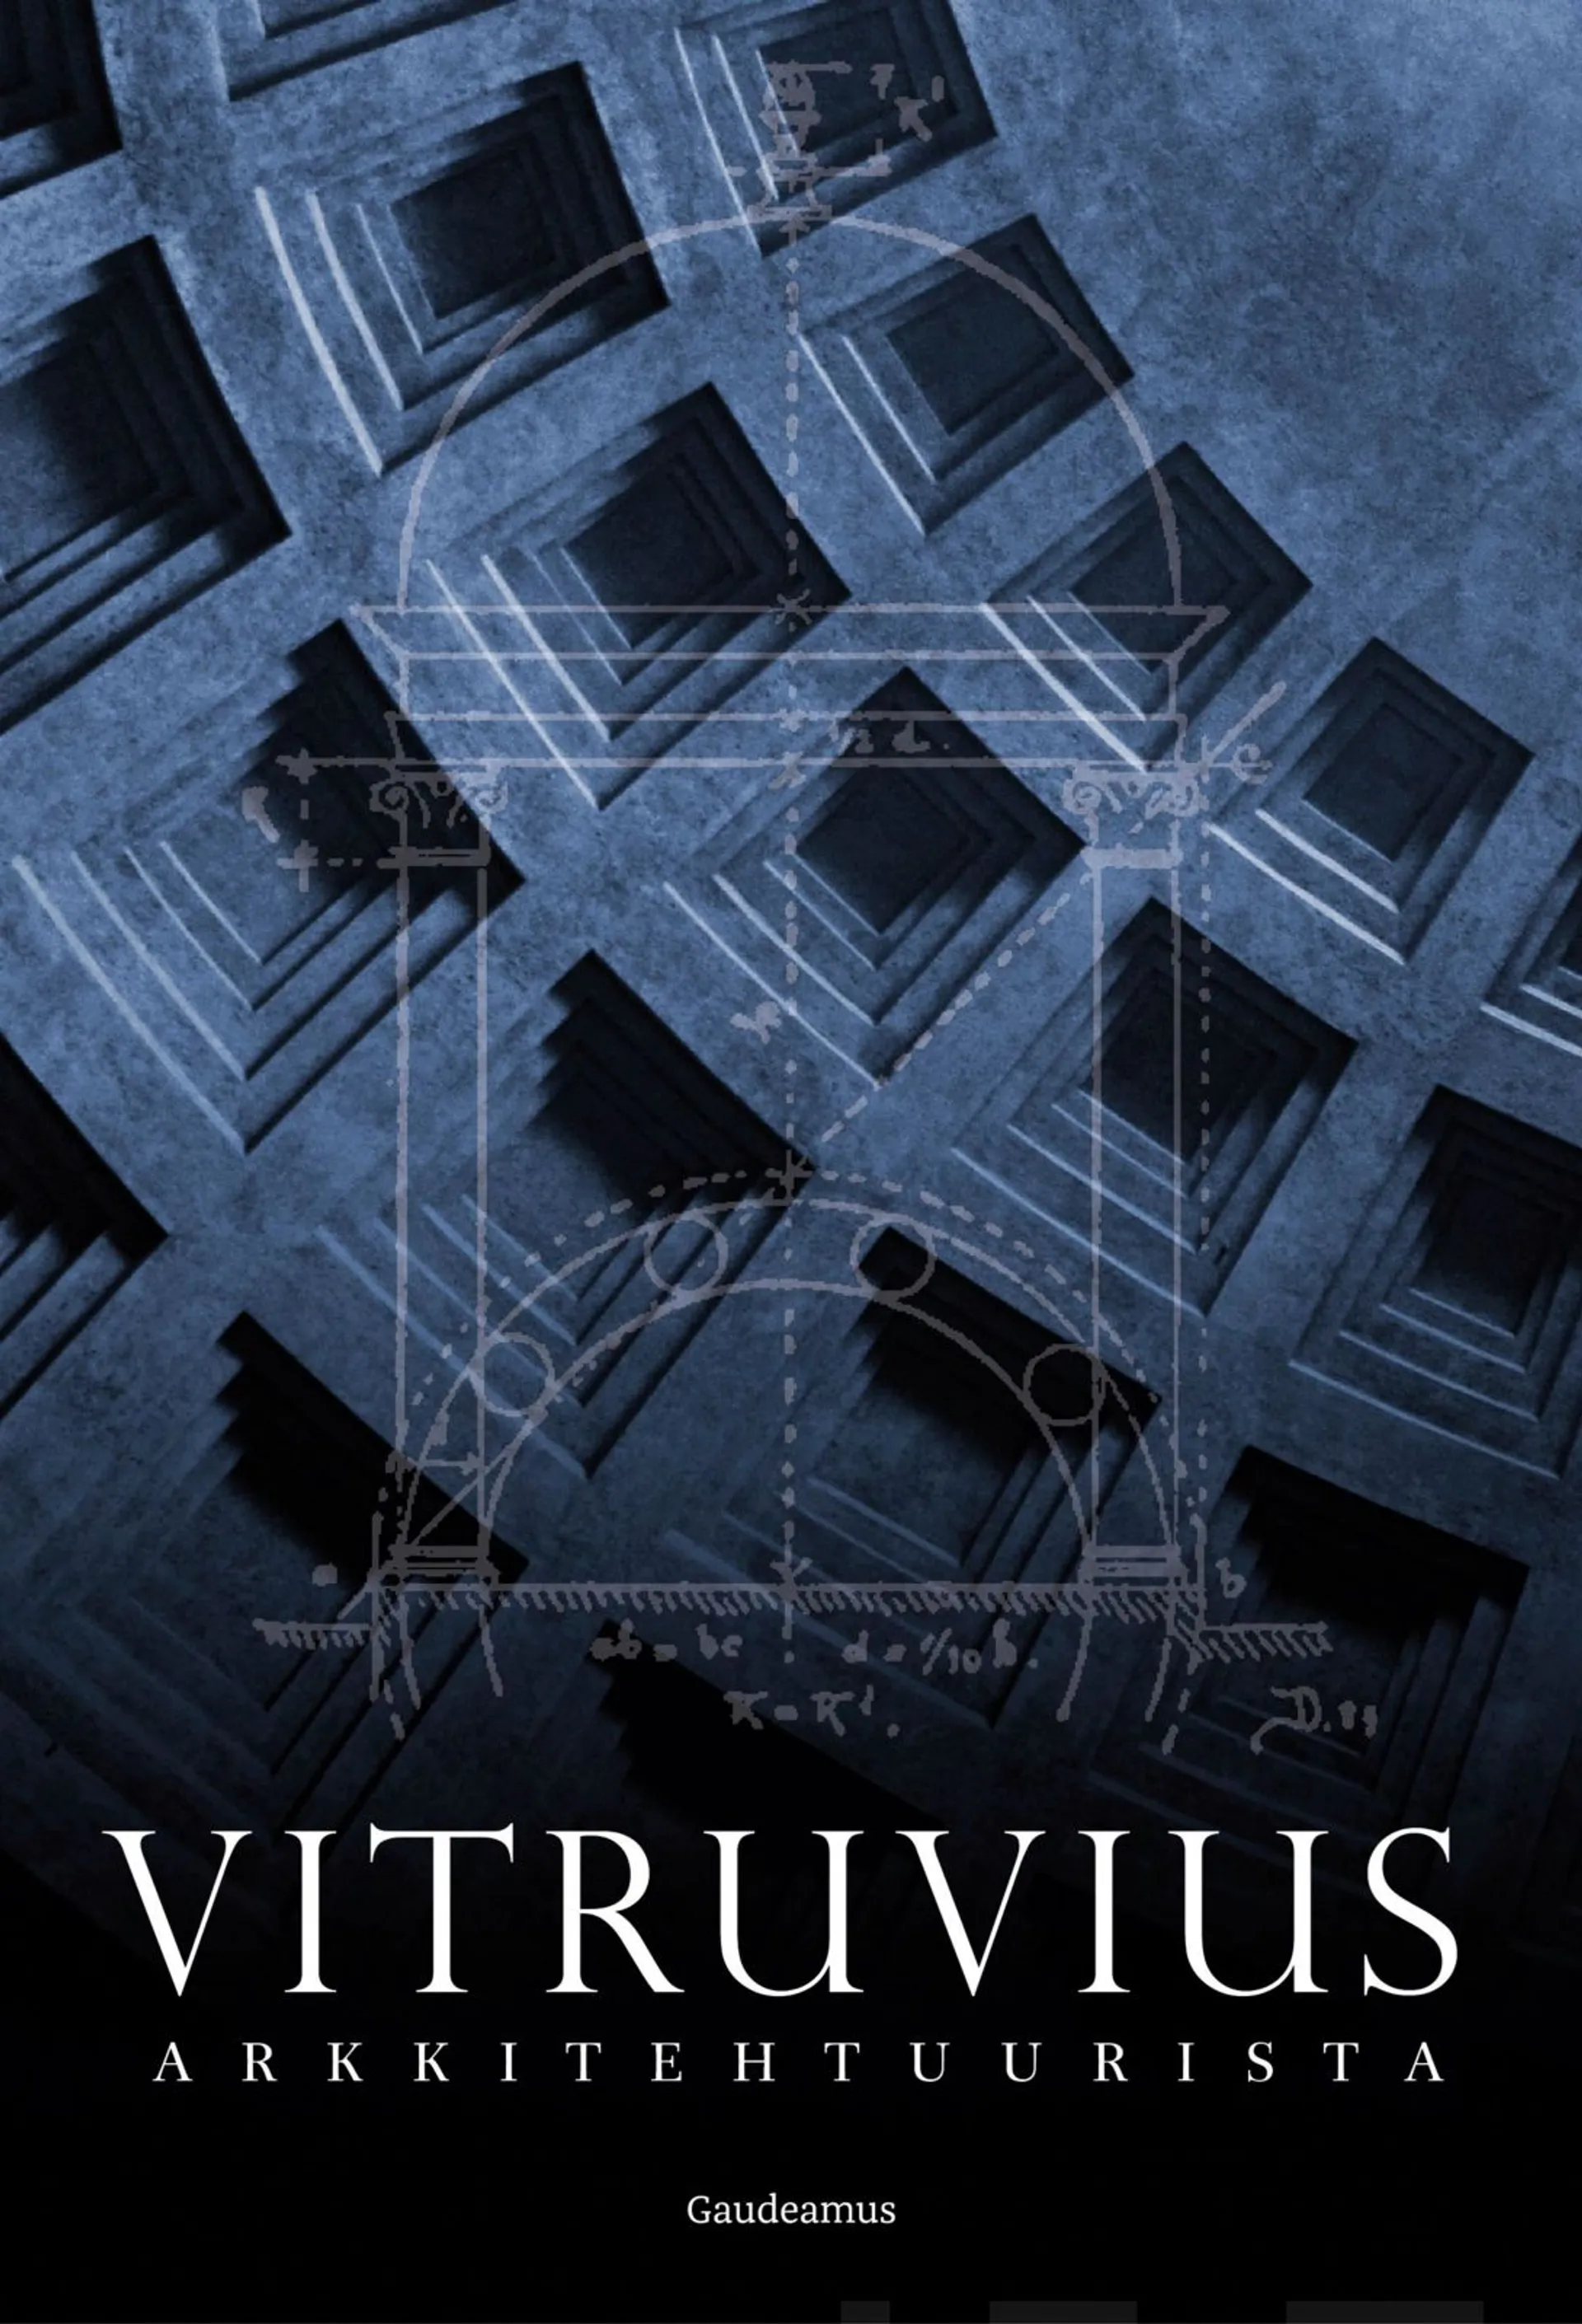 Vitruvius, Arkkitehtuurista